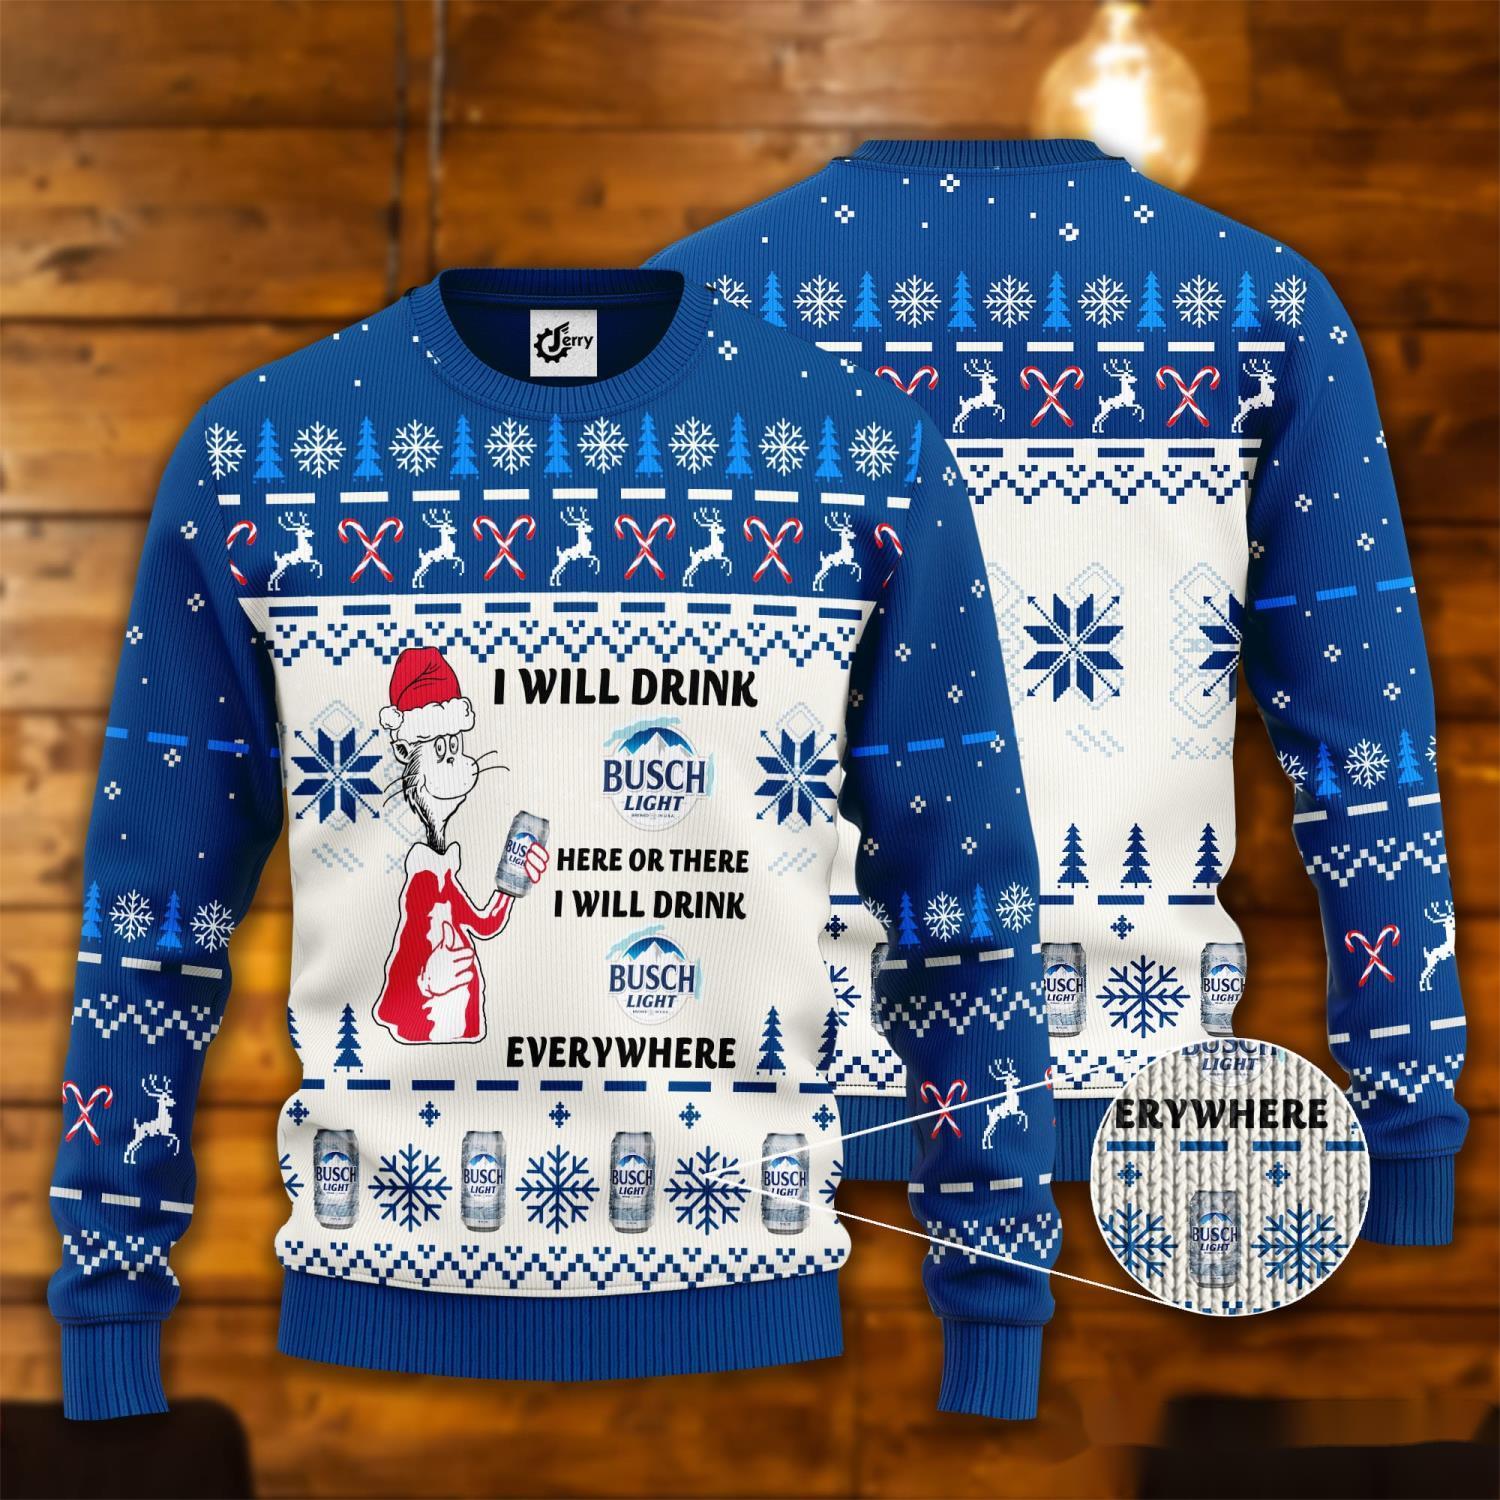 Busch Light Christmas Sweater Manufacturing